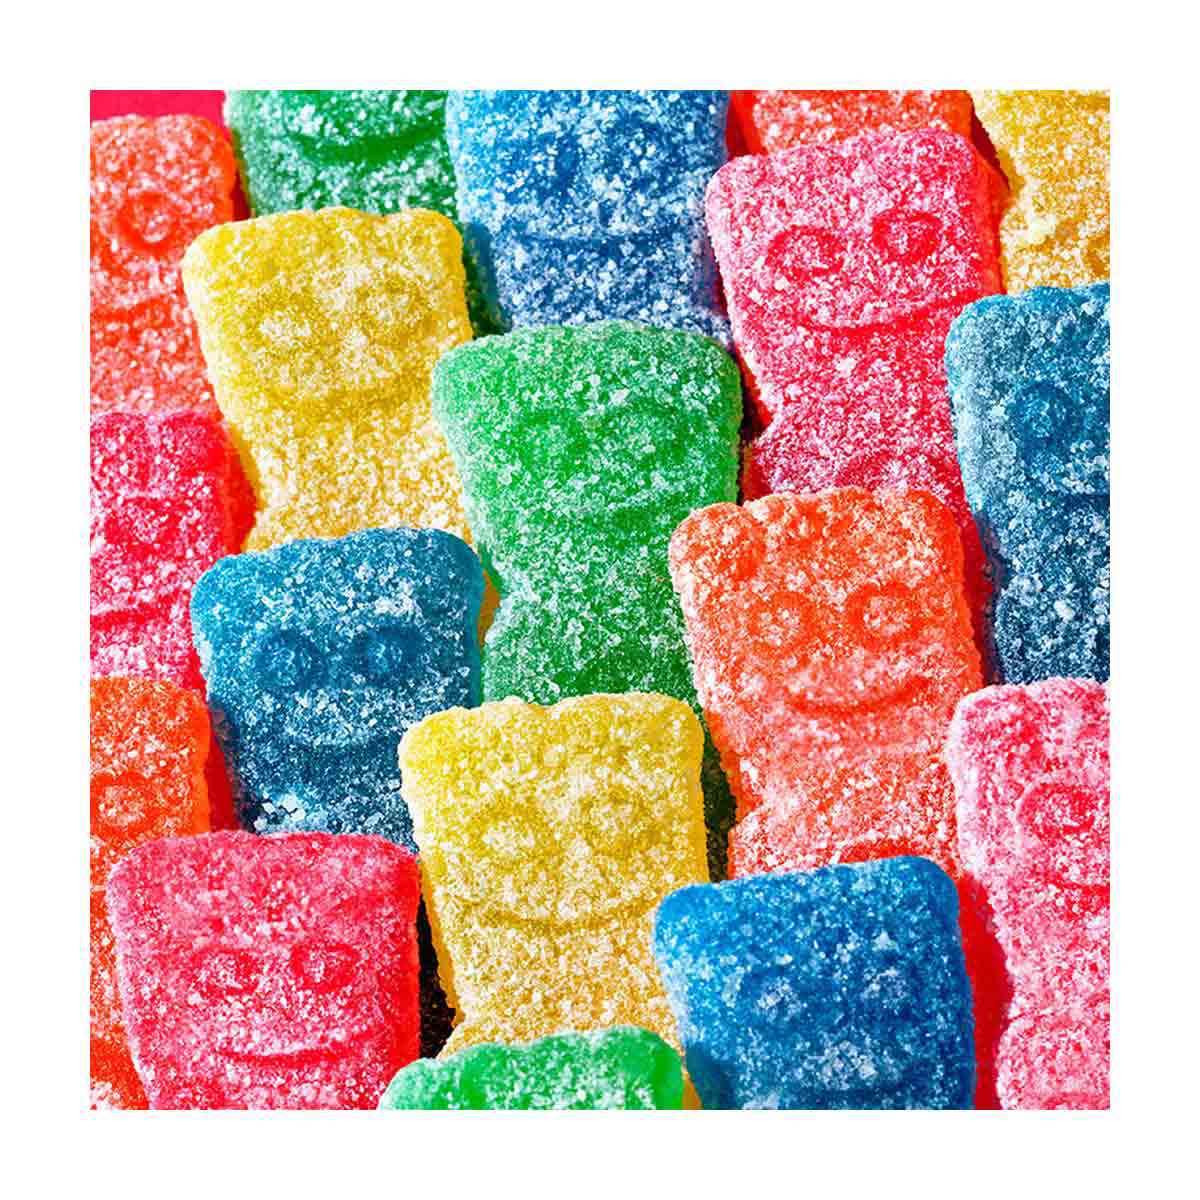 Sour Patch Kids Big Kids Soft & Chewy Candy, 12 oz